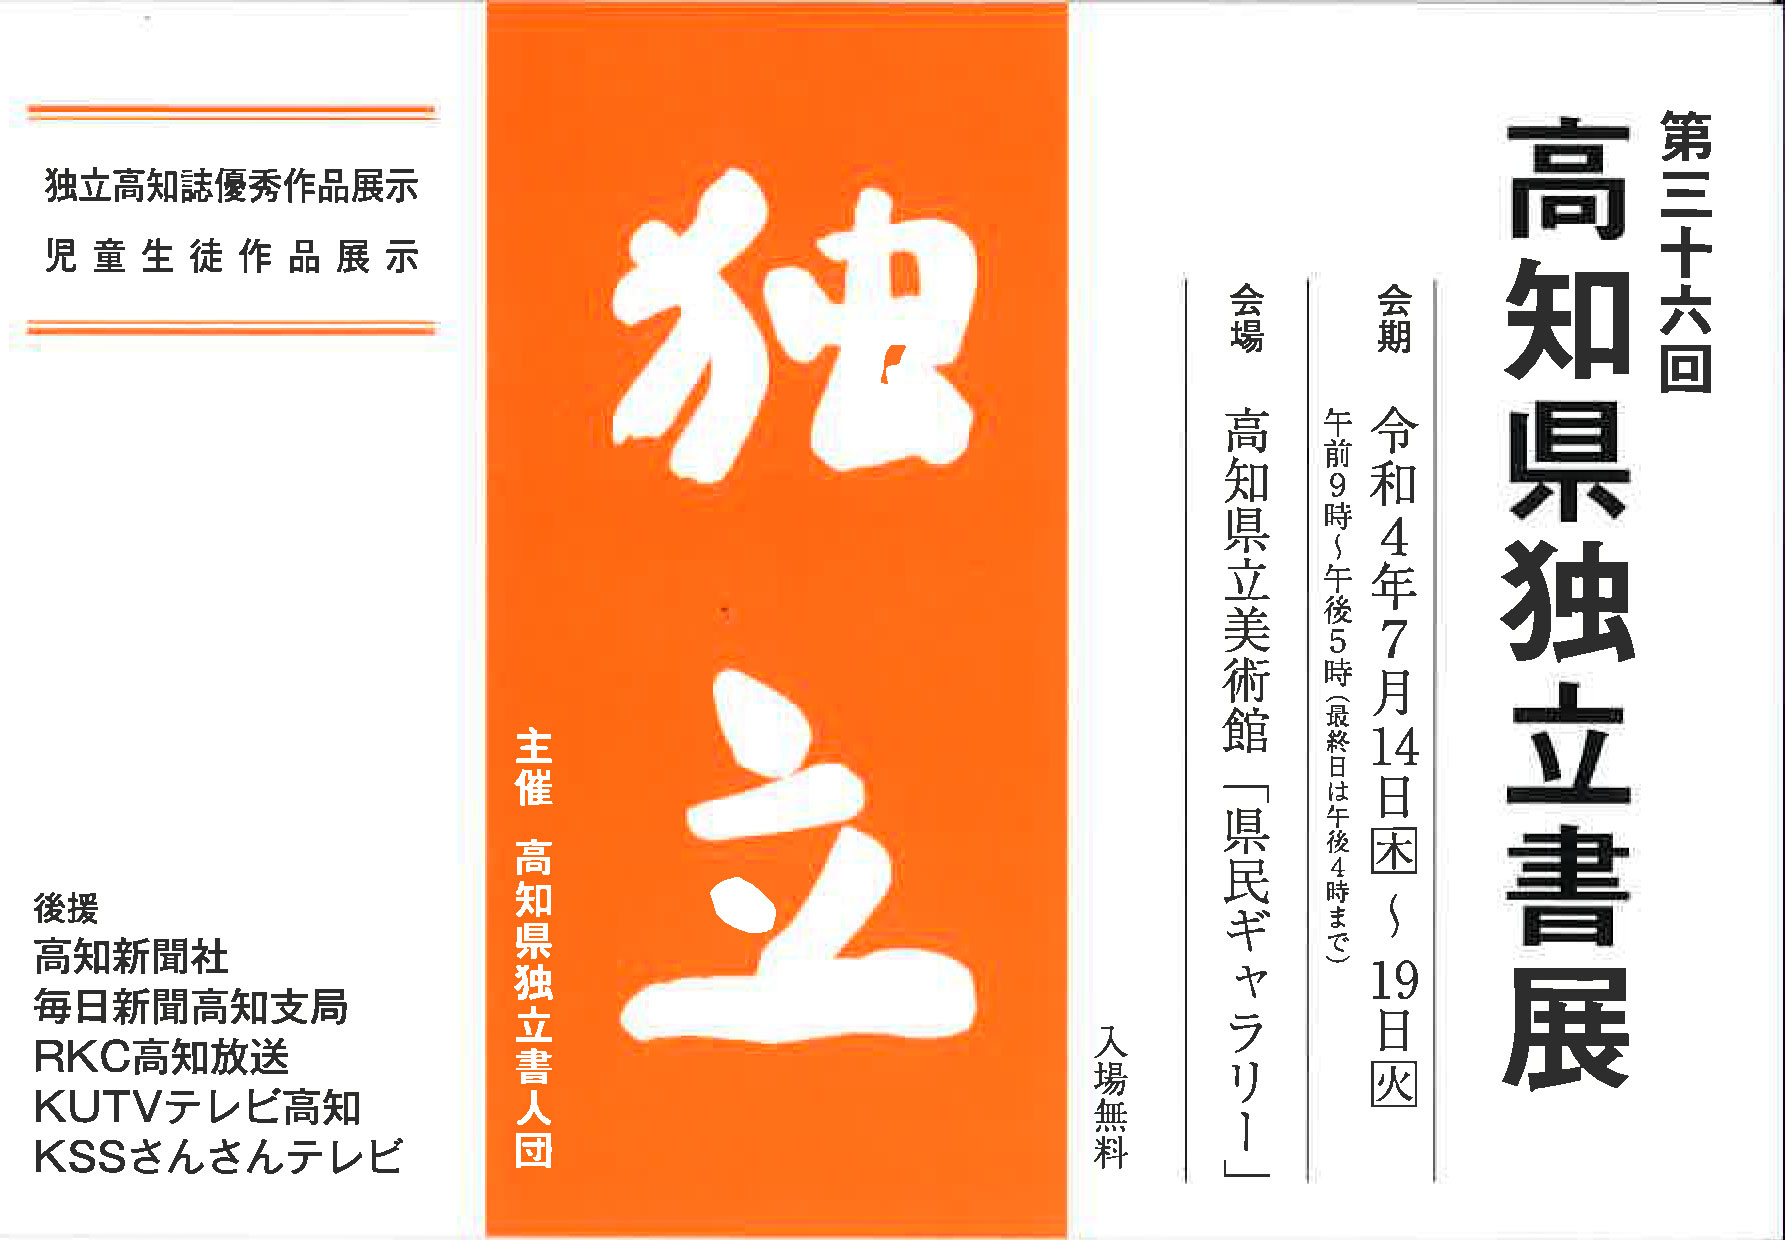 【展覧会情報】第三十六回 高知県独立書展